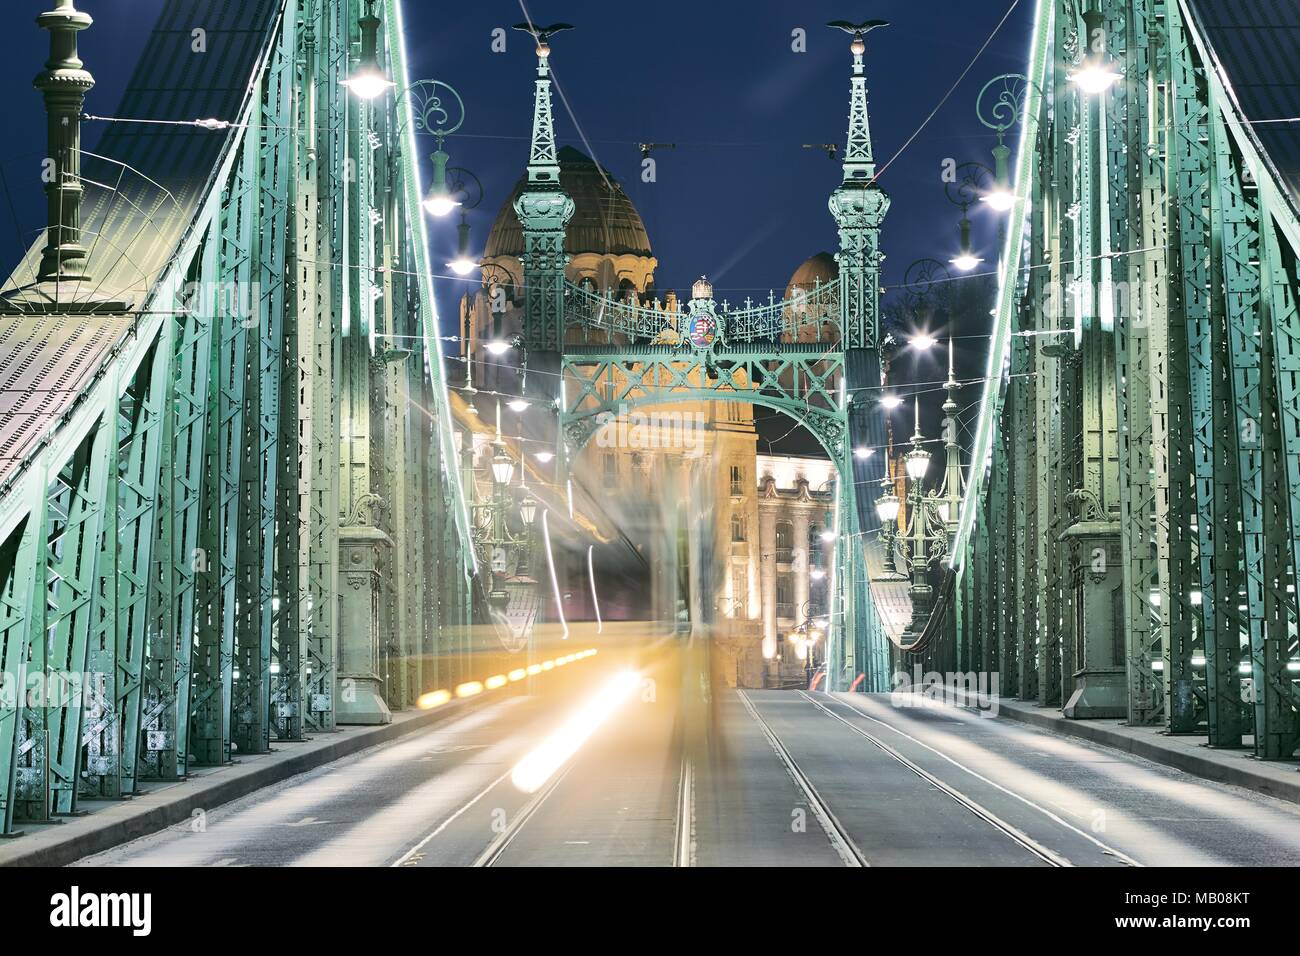 Budapest bei Nacht. Straßenbahn auf alten Eisernen Brücke - Szabadság hid (Freiheitsbrücke). Stockfoto